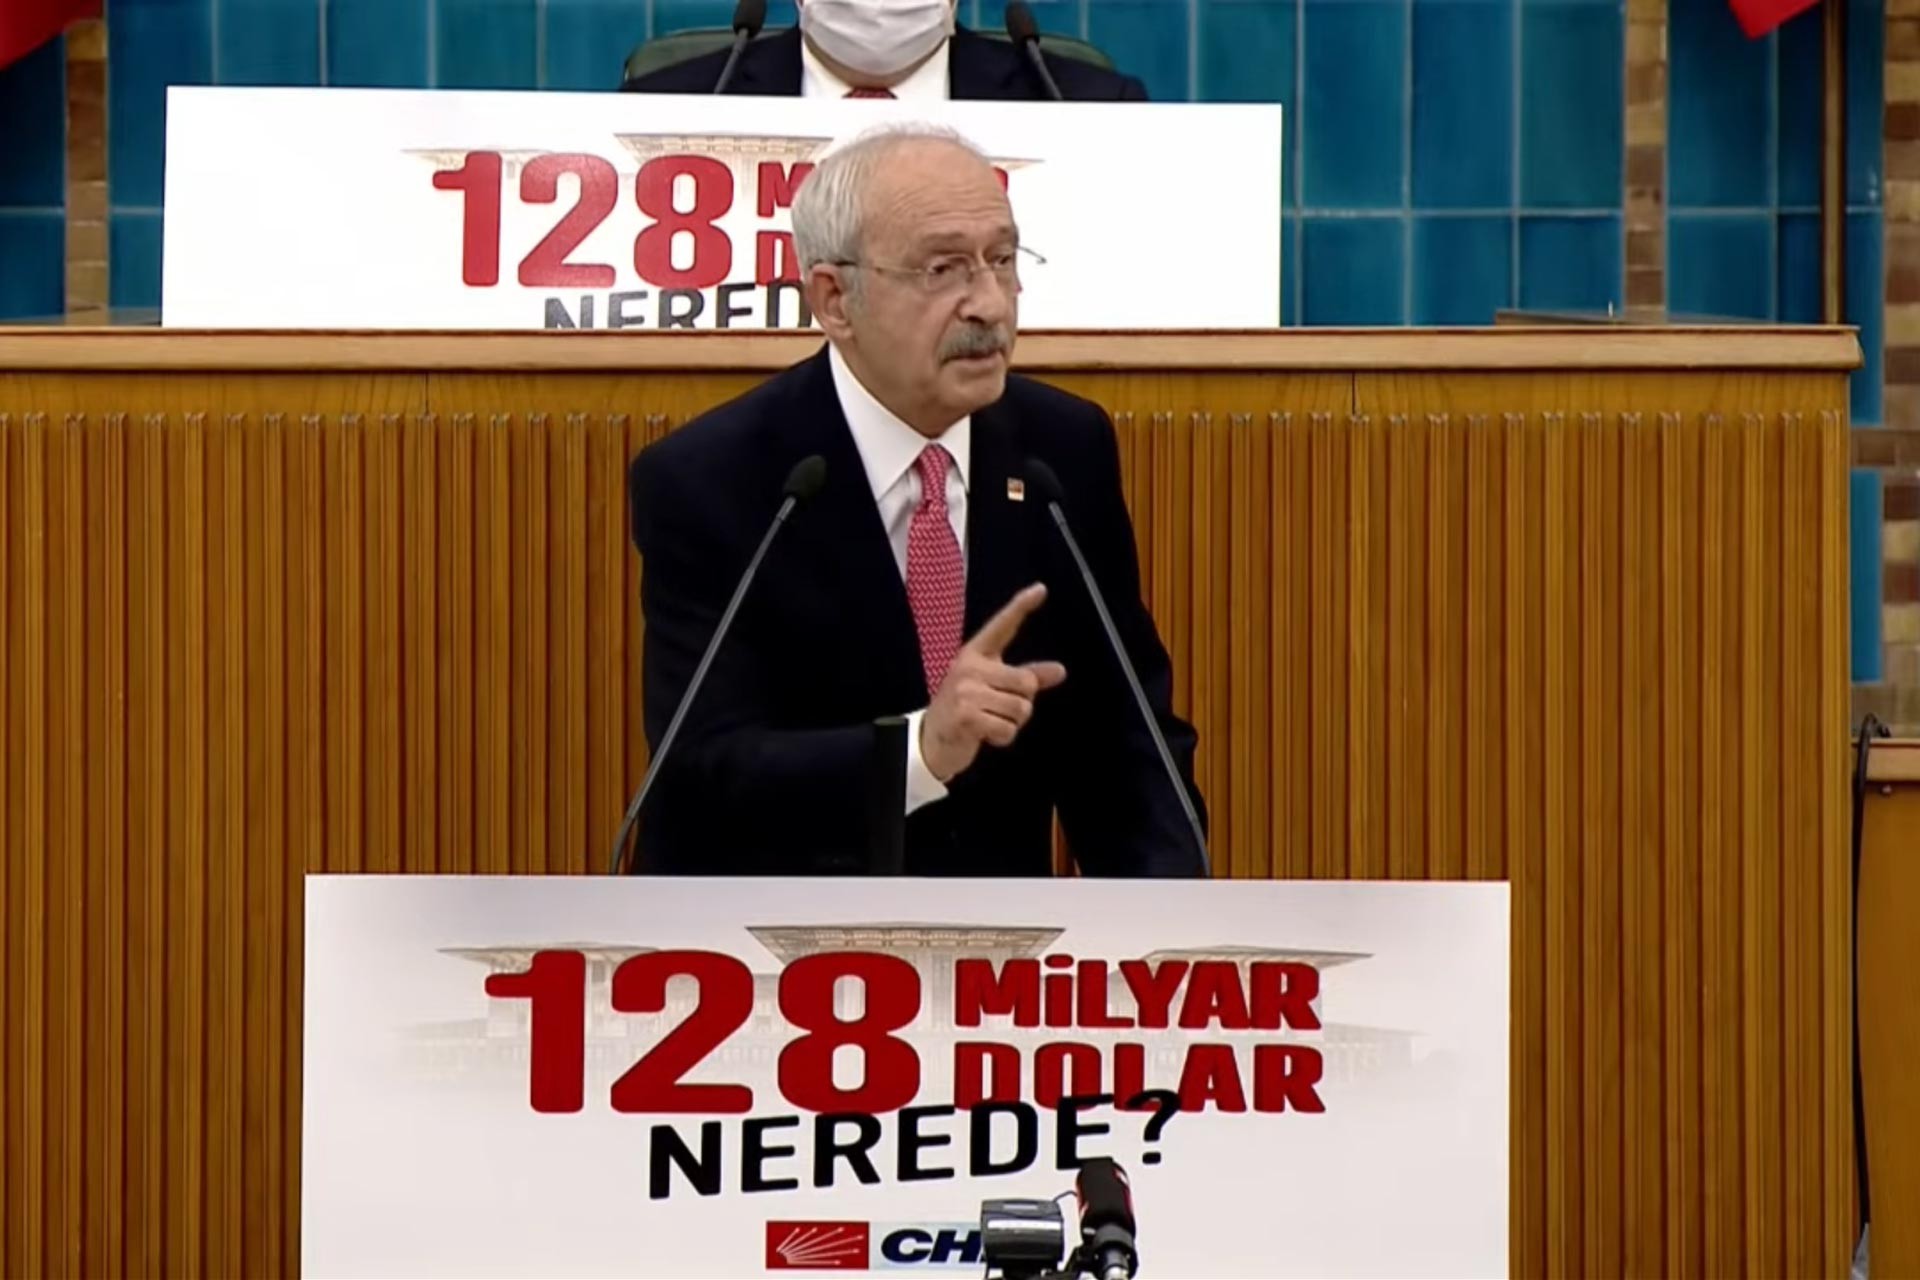 HABER - ANALİZ: Kılıçdaroğlu fezlekesinin nedeni "128 milyar dolar nerede" kampanyası mı?